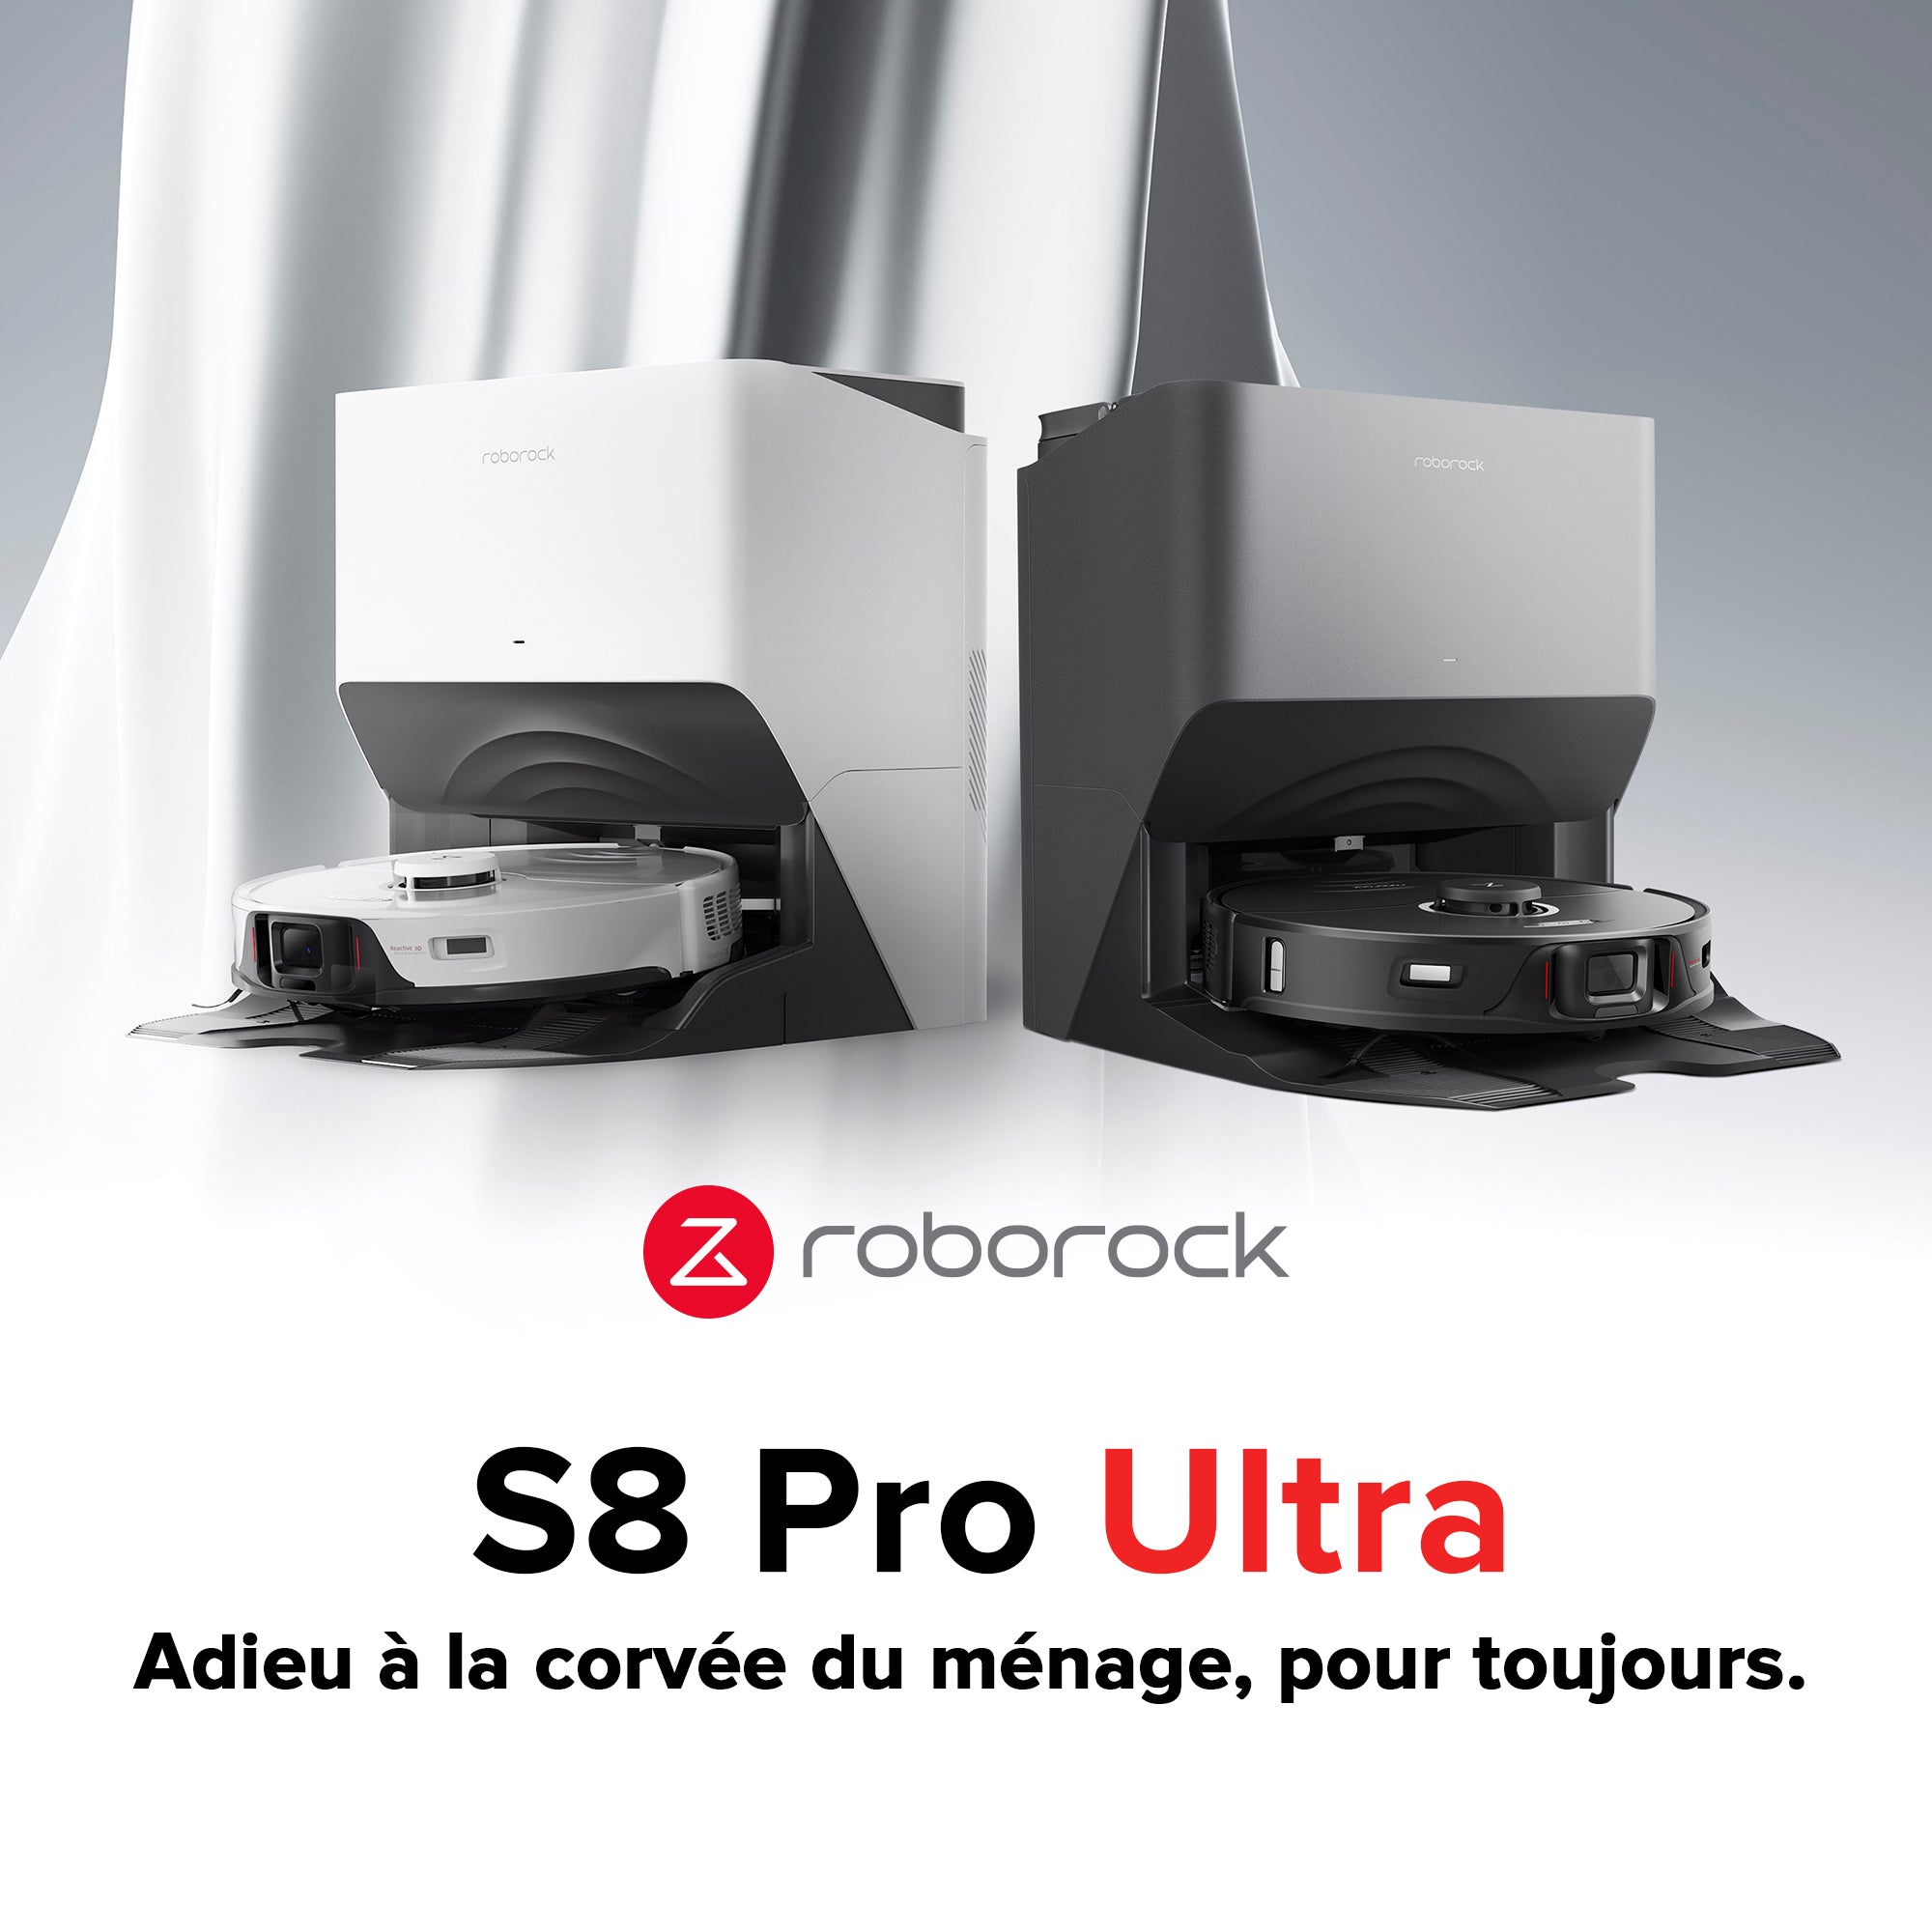 Roborock présente la Rolls des robots-aspirateurs avec le S8 MaxV Ultra !